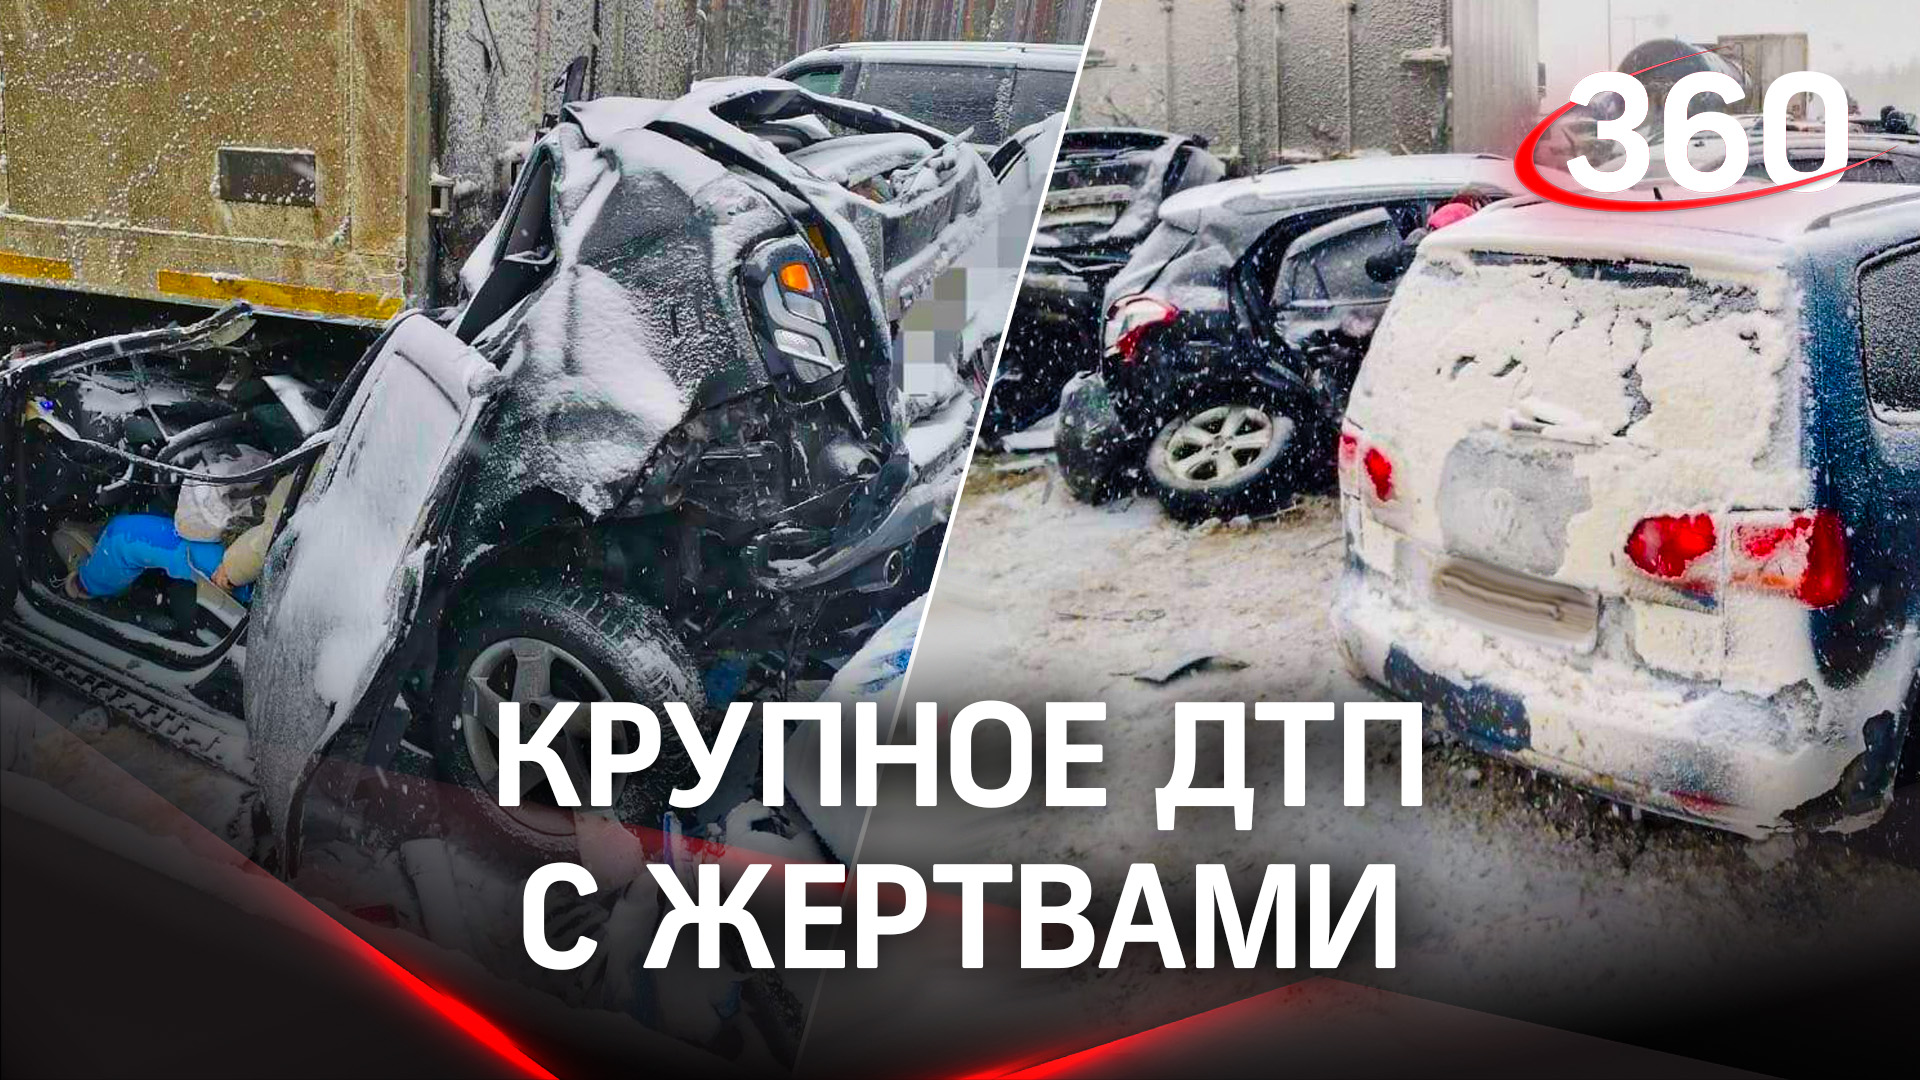 Массовая авария под Нижним Новгородом - столкнулись более 32 машин. Есть погибшая и раненые